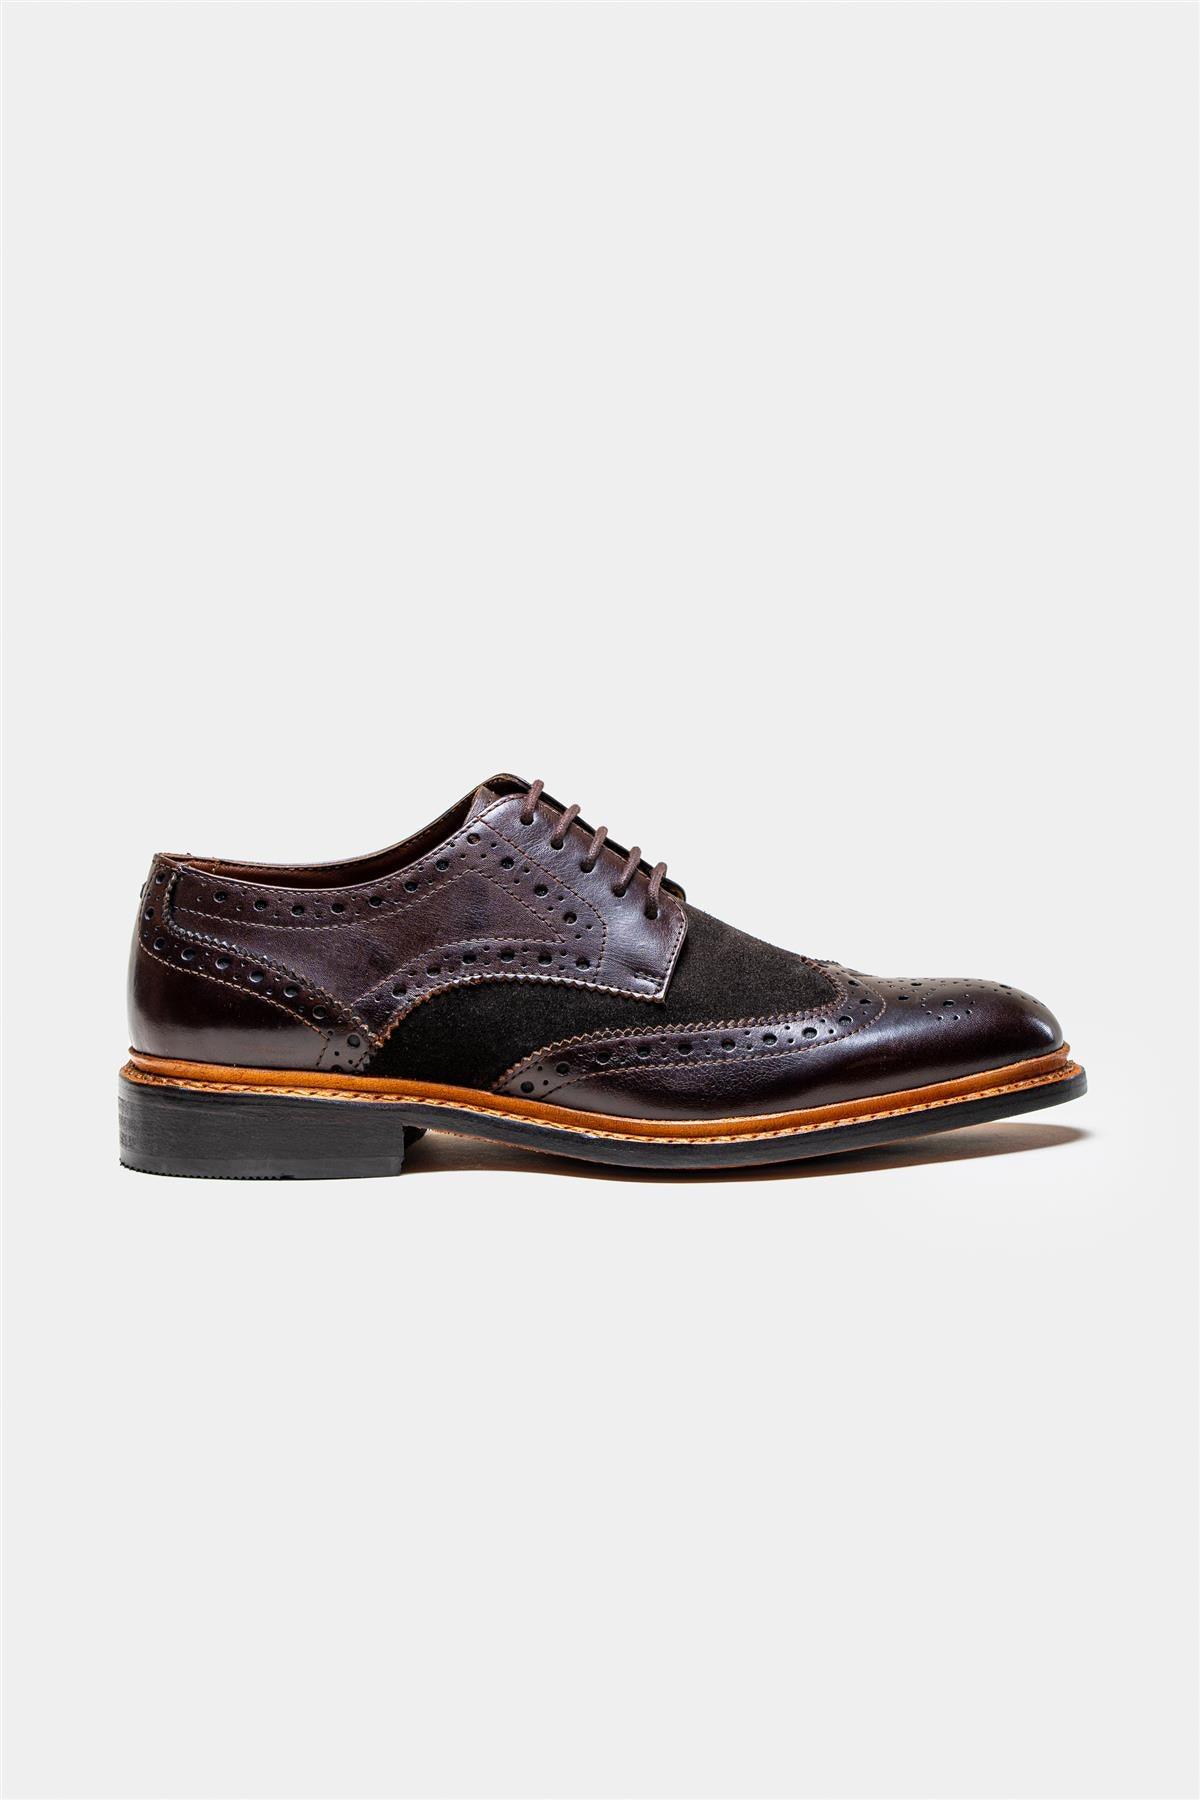 Merton brown/brown shoe side